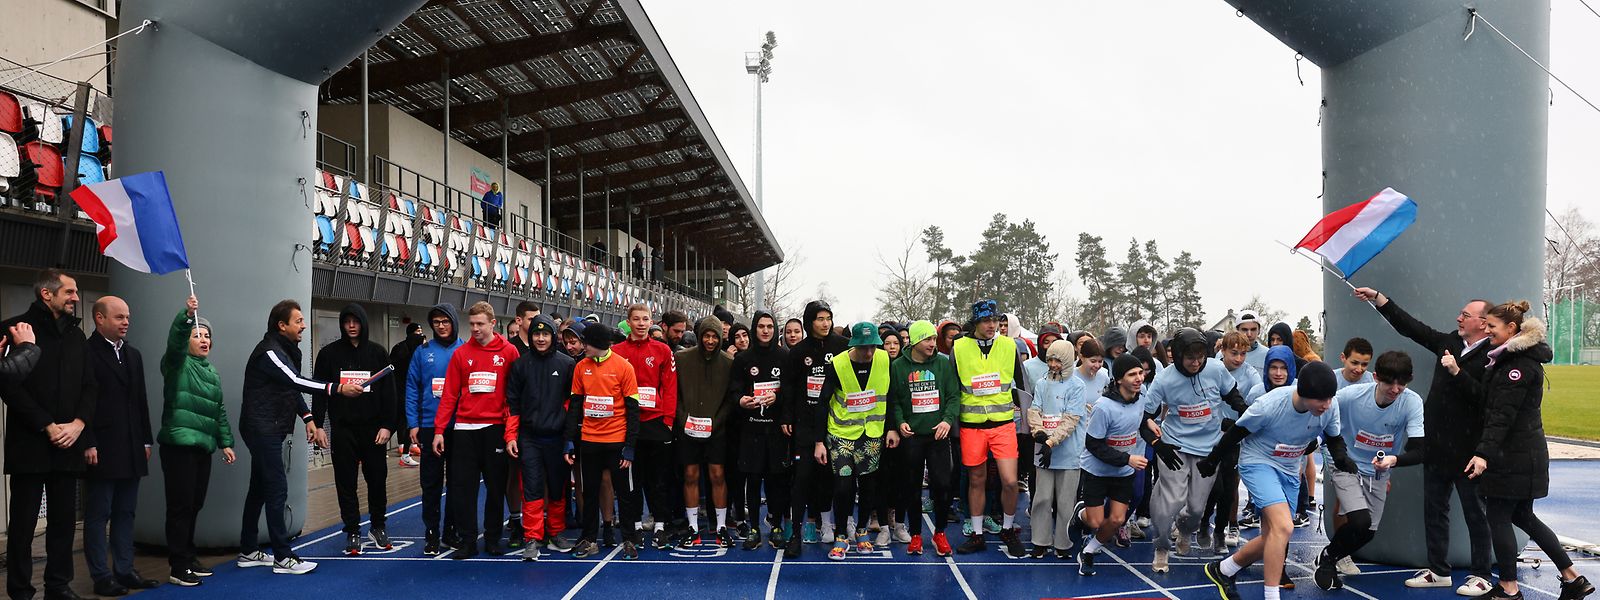 150 élèves du Sportlycée et du lycée Vauban ont participé à une course amicale.